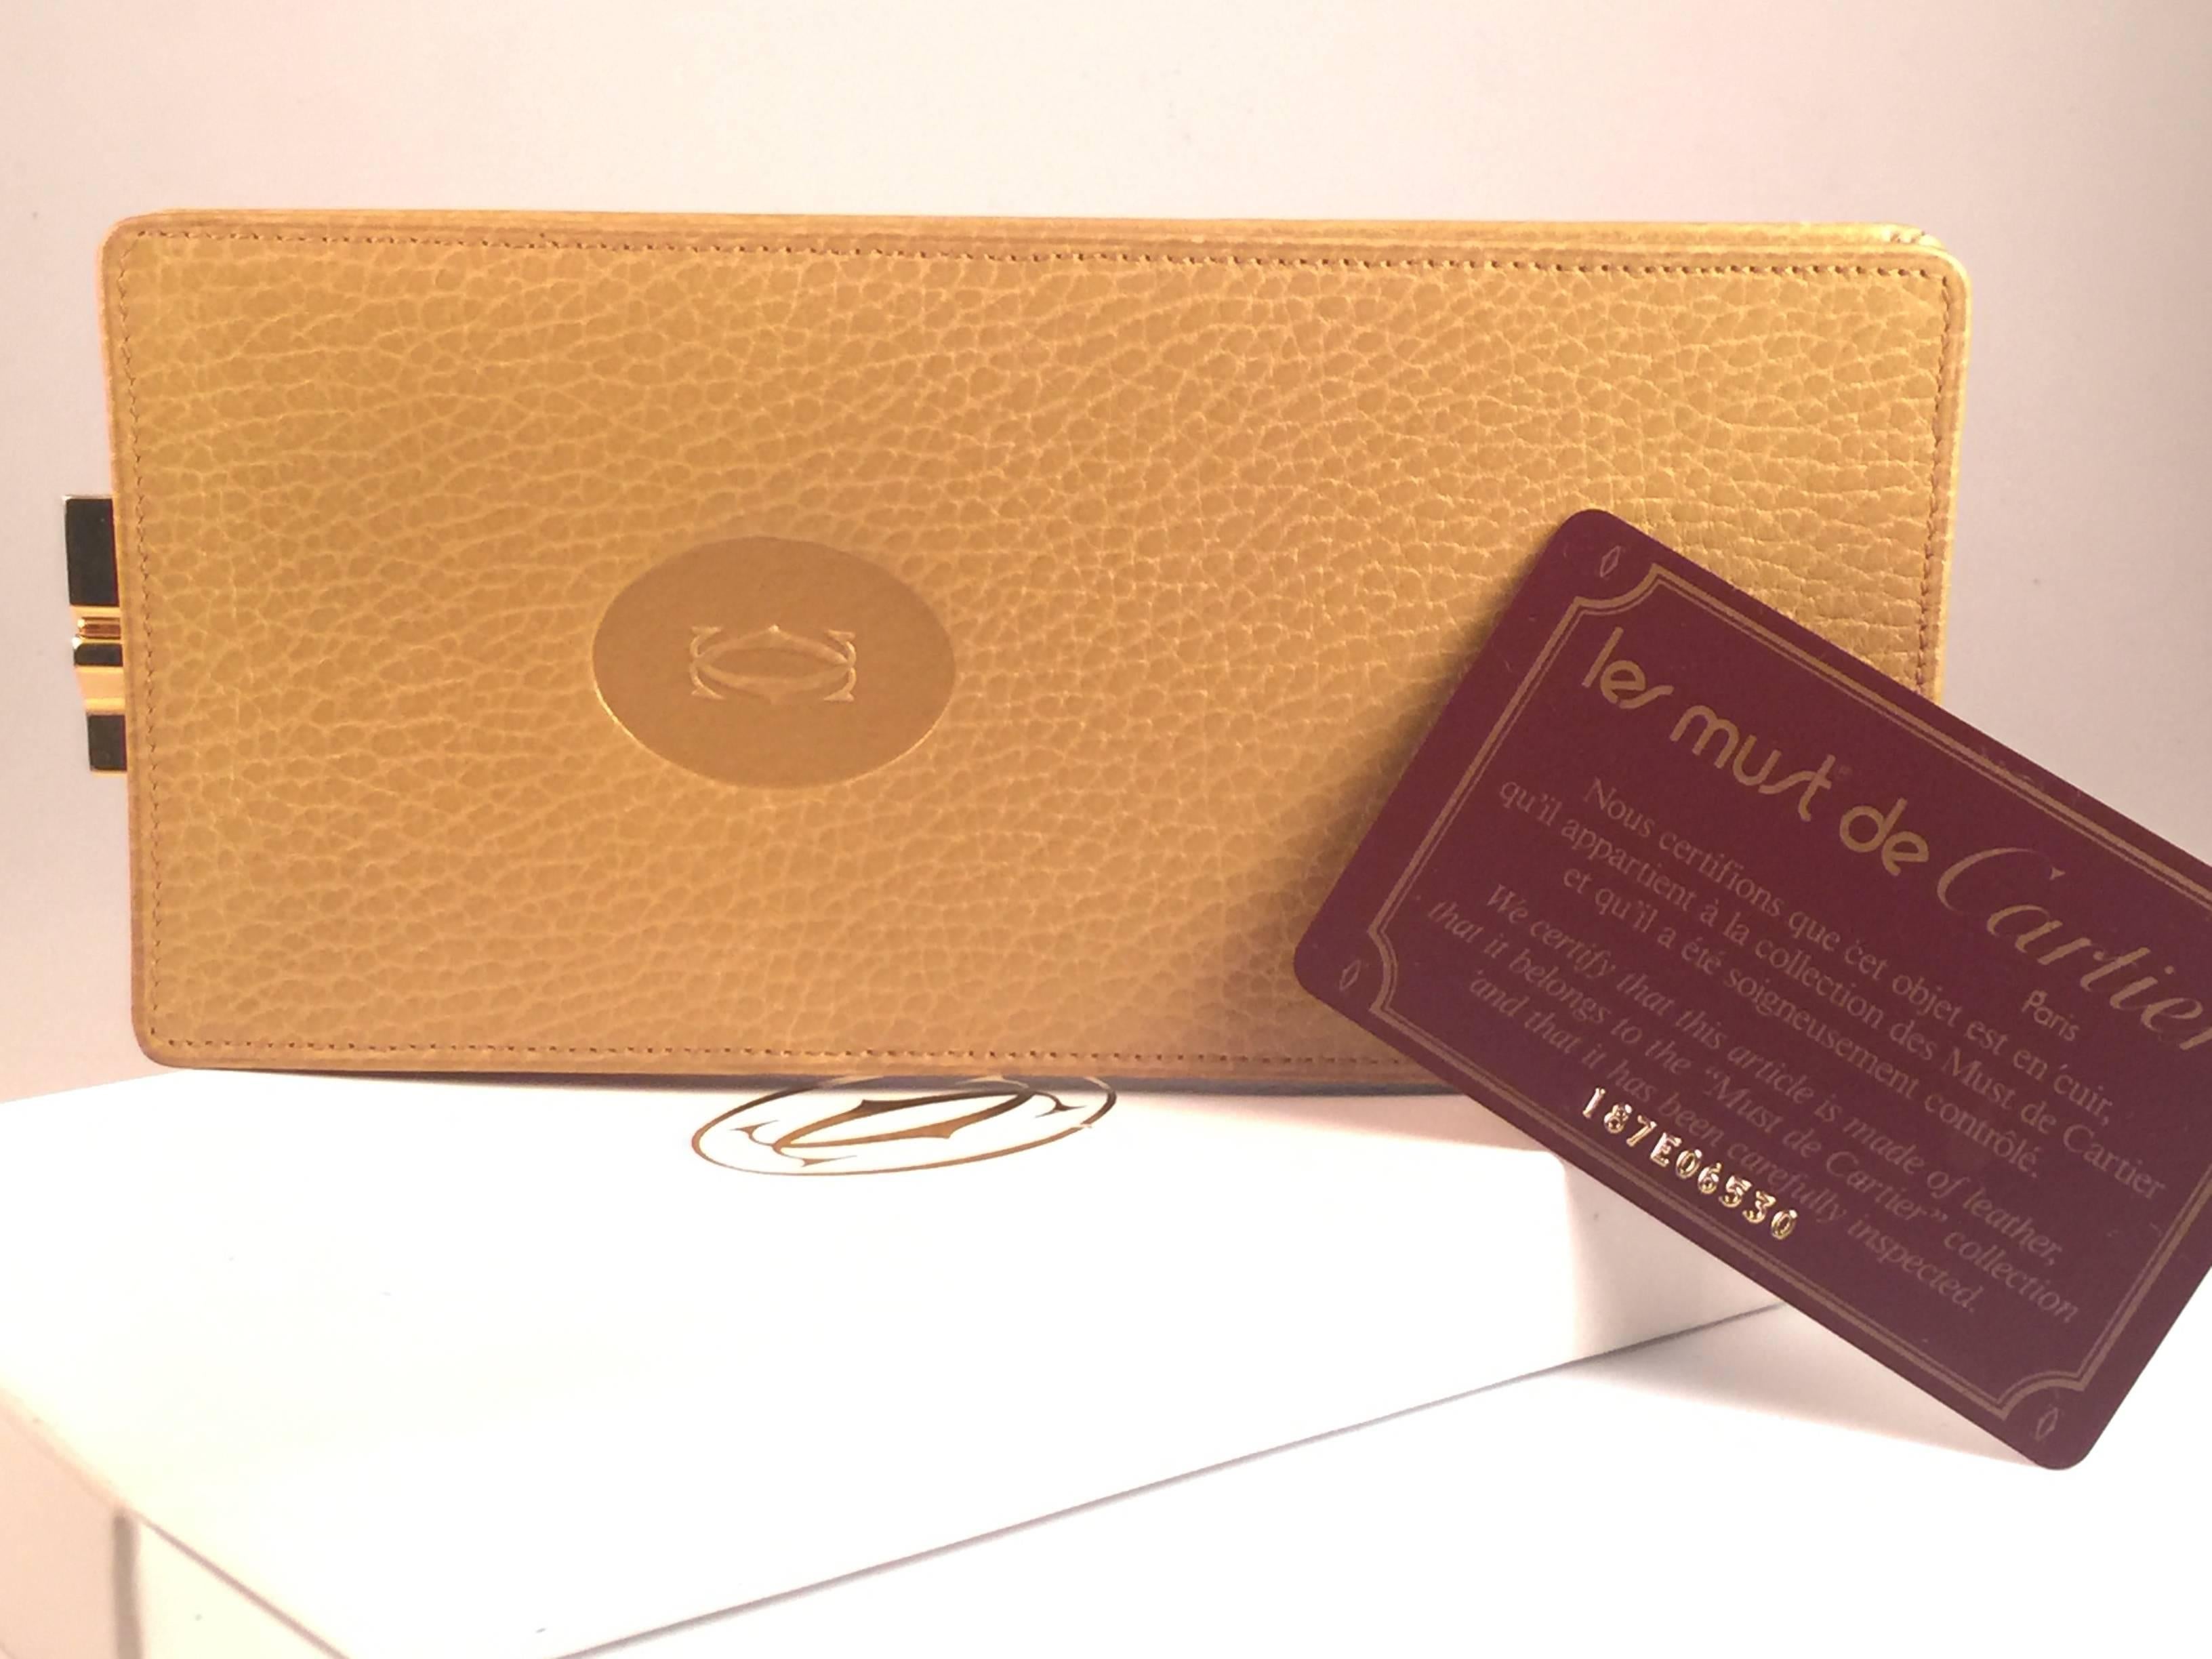 New Vintage Cartier Sleeve Etui with gold clasp and genuine tan leather. 

Livré avec sa boîte et sa carte d'authenticité. 

Fabriqué en France en 1980. 